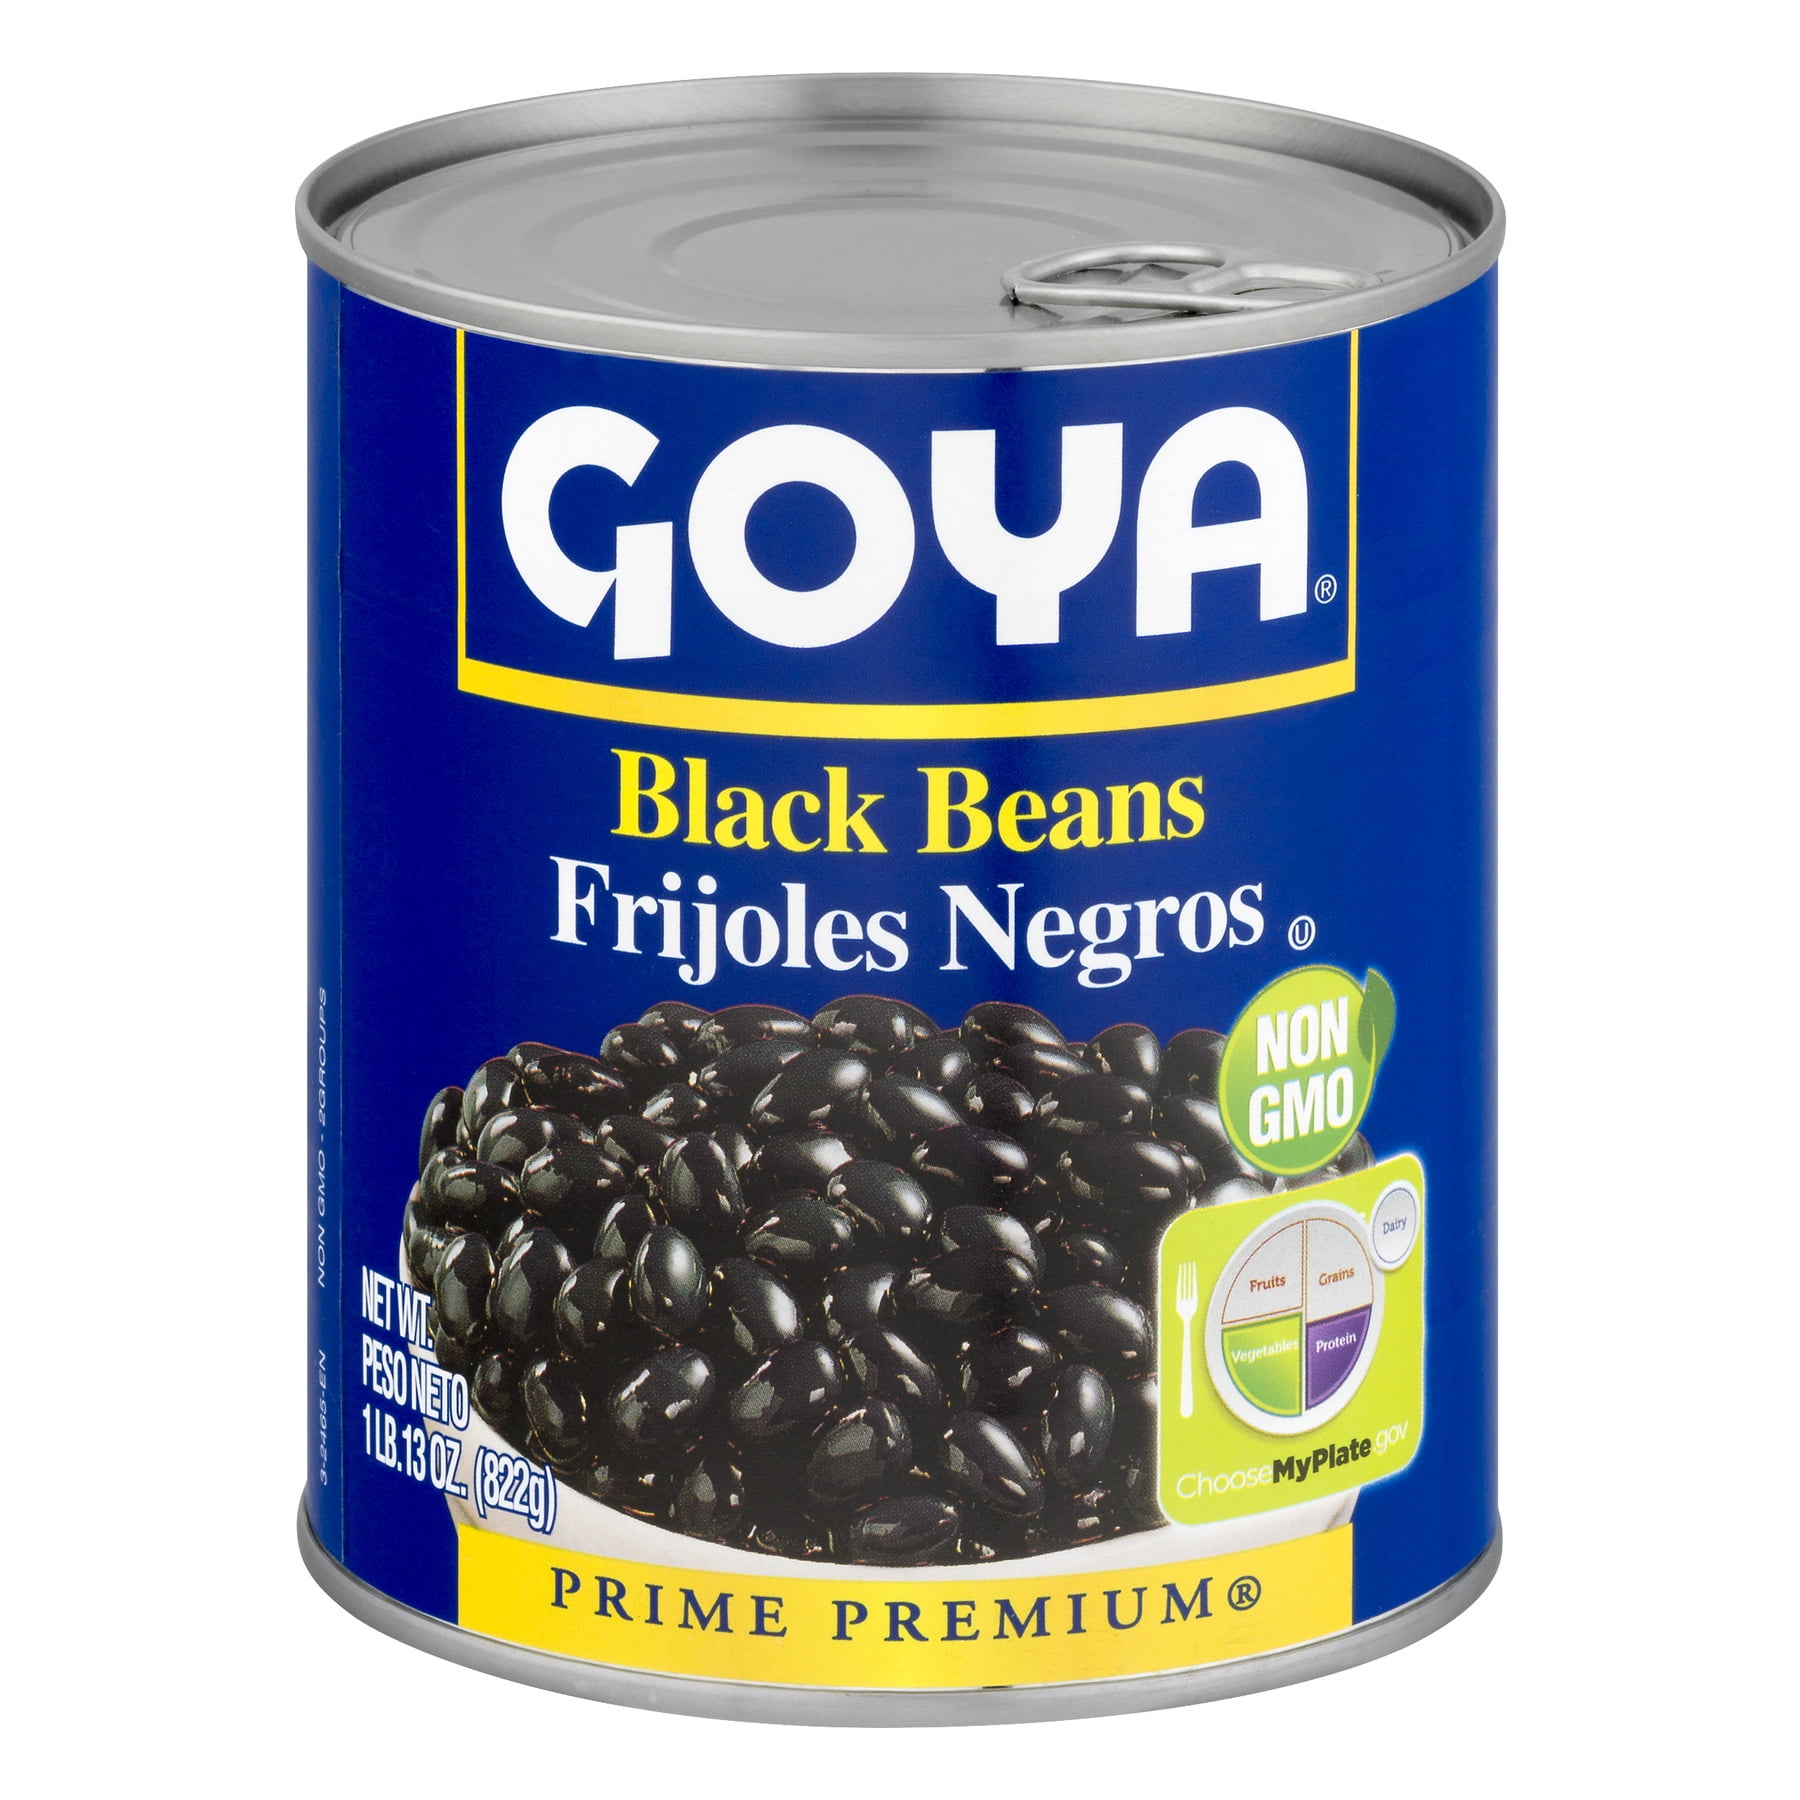 Goya Black Beans, 29.0 Oz